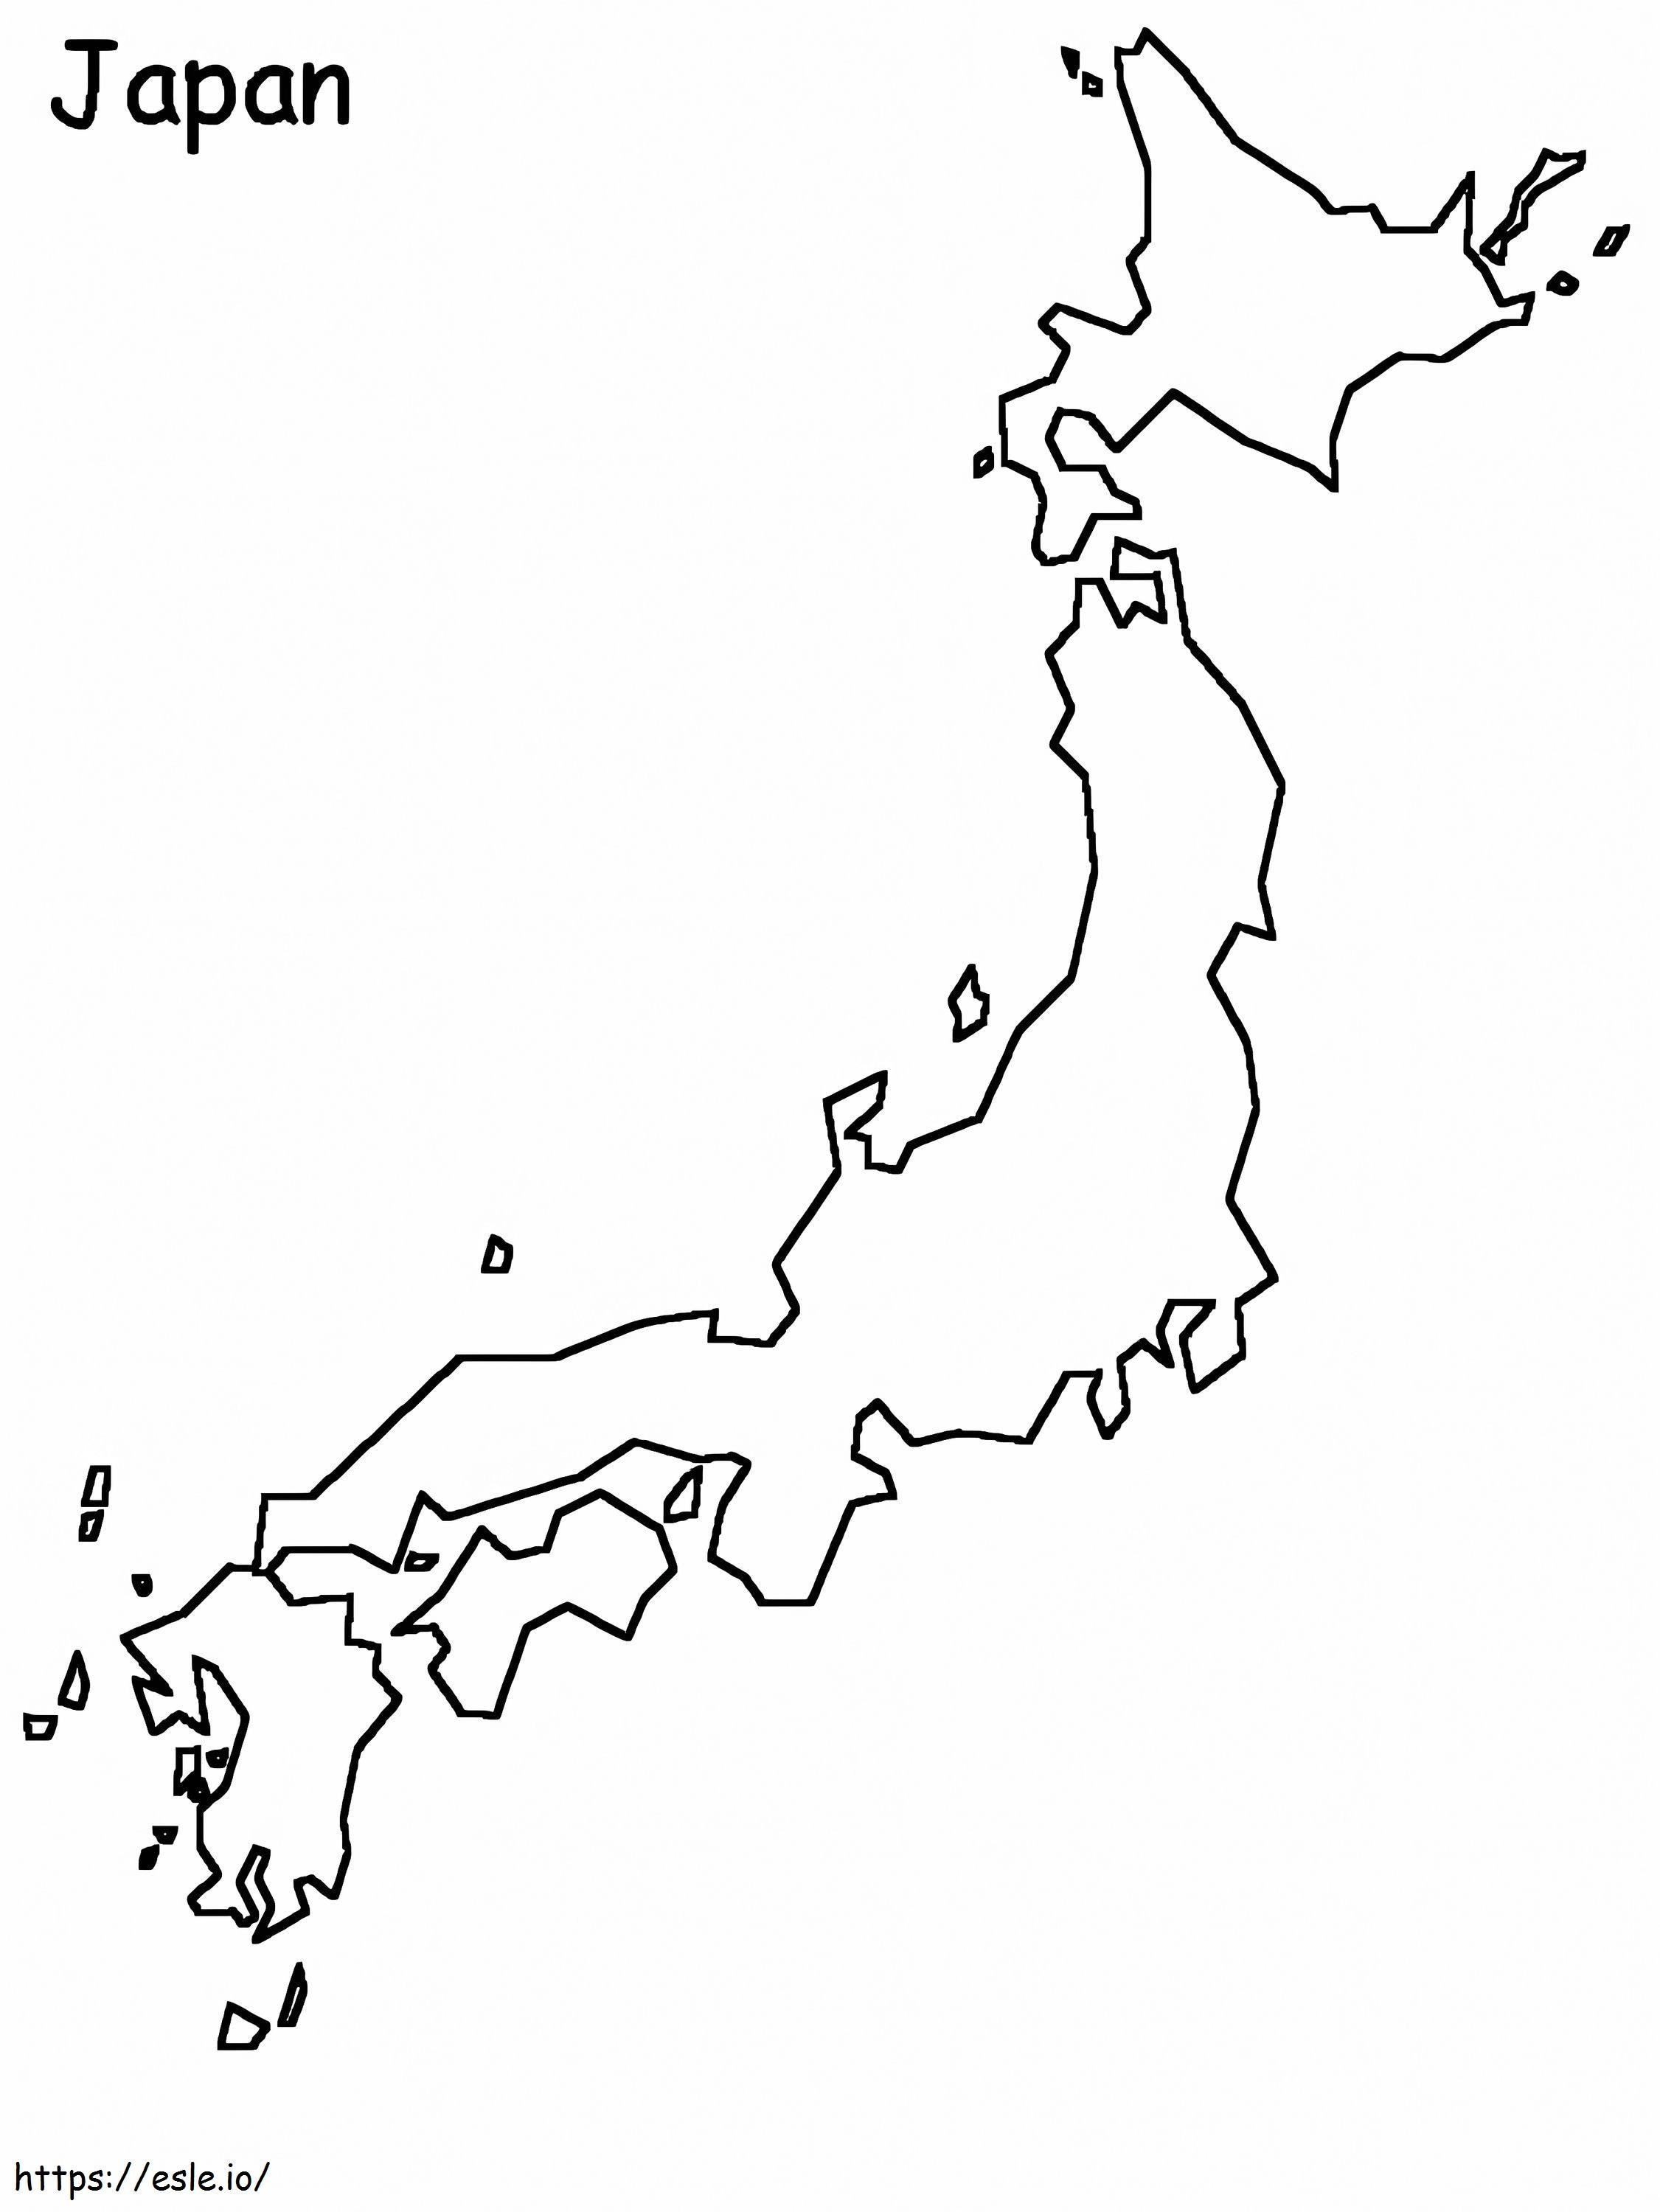 Página para colorir do mapa do Japão para colorir